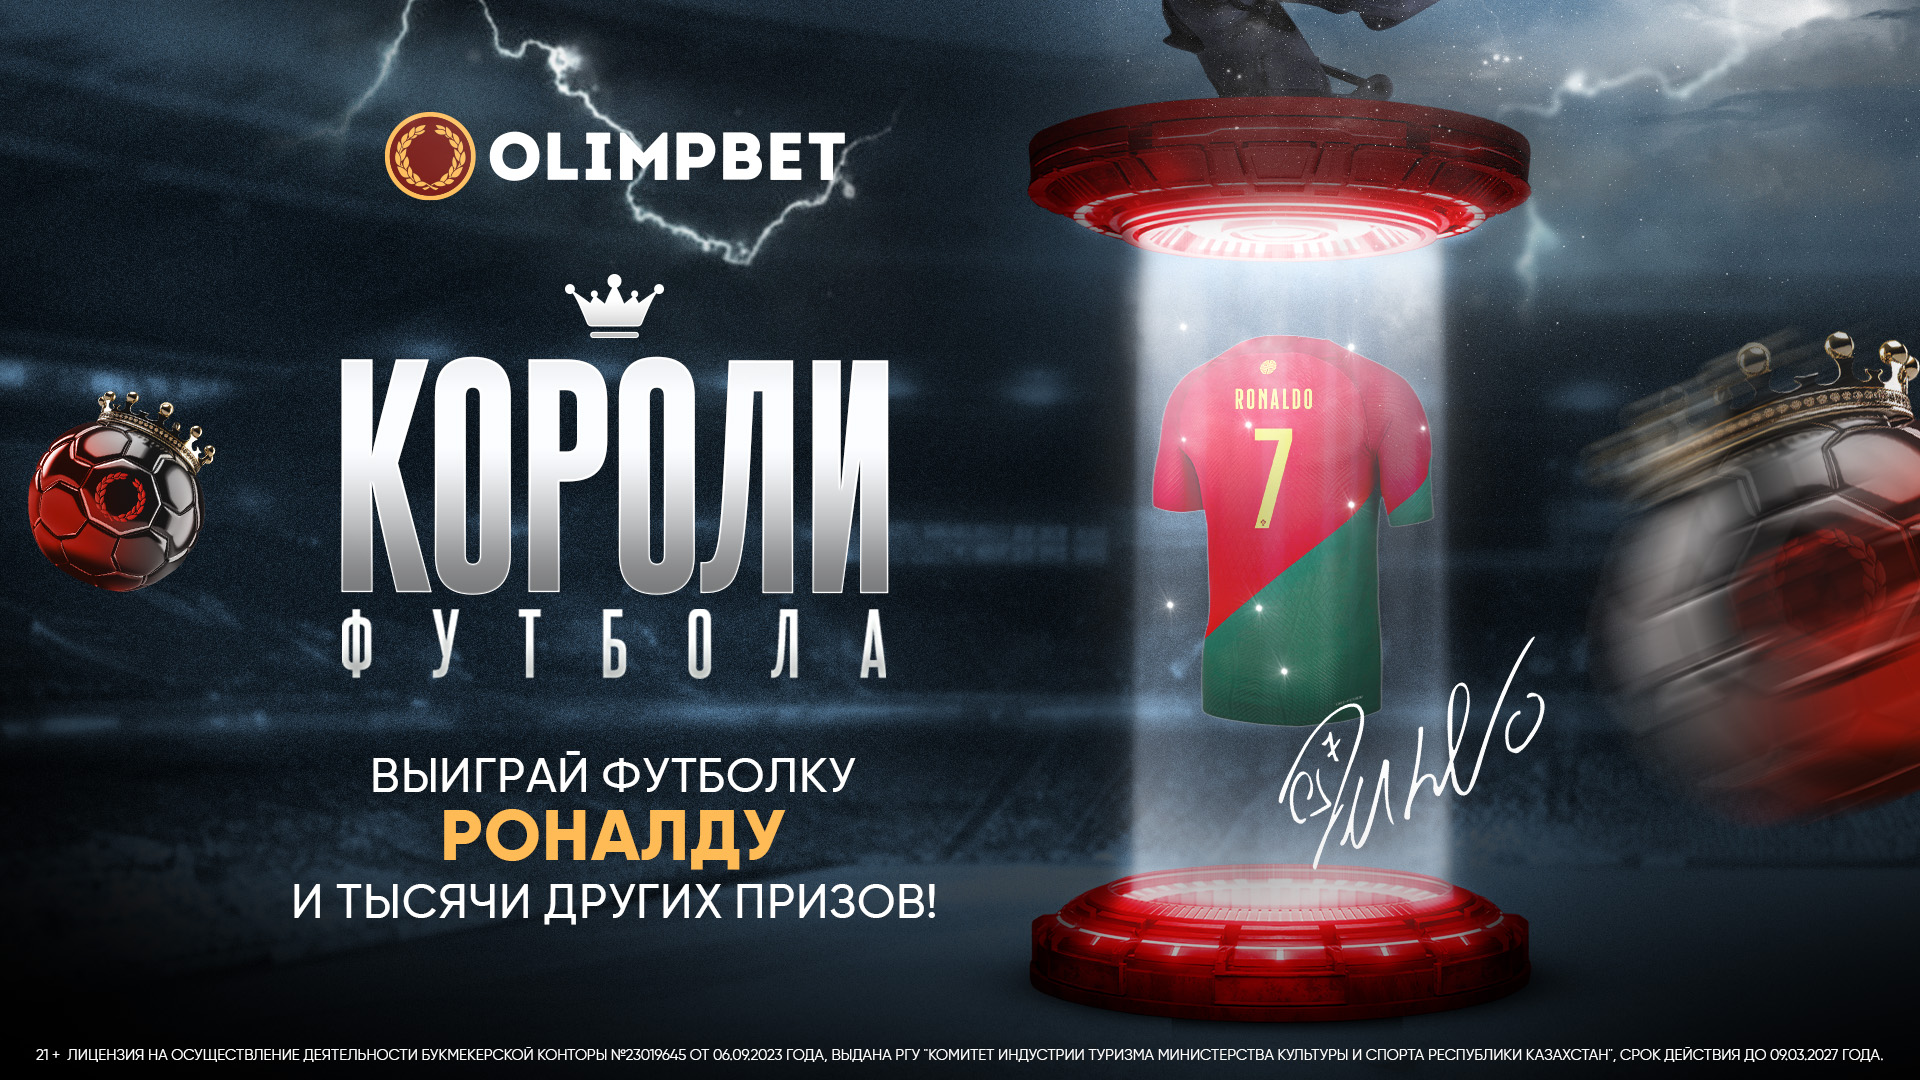 Футболка с автографом Роналду от Olimpbet уже в Алматы